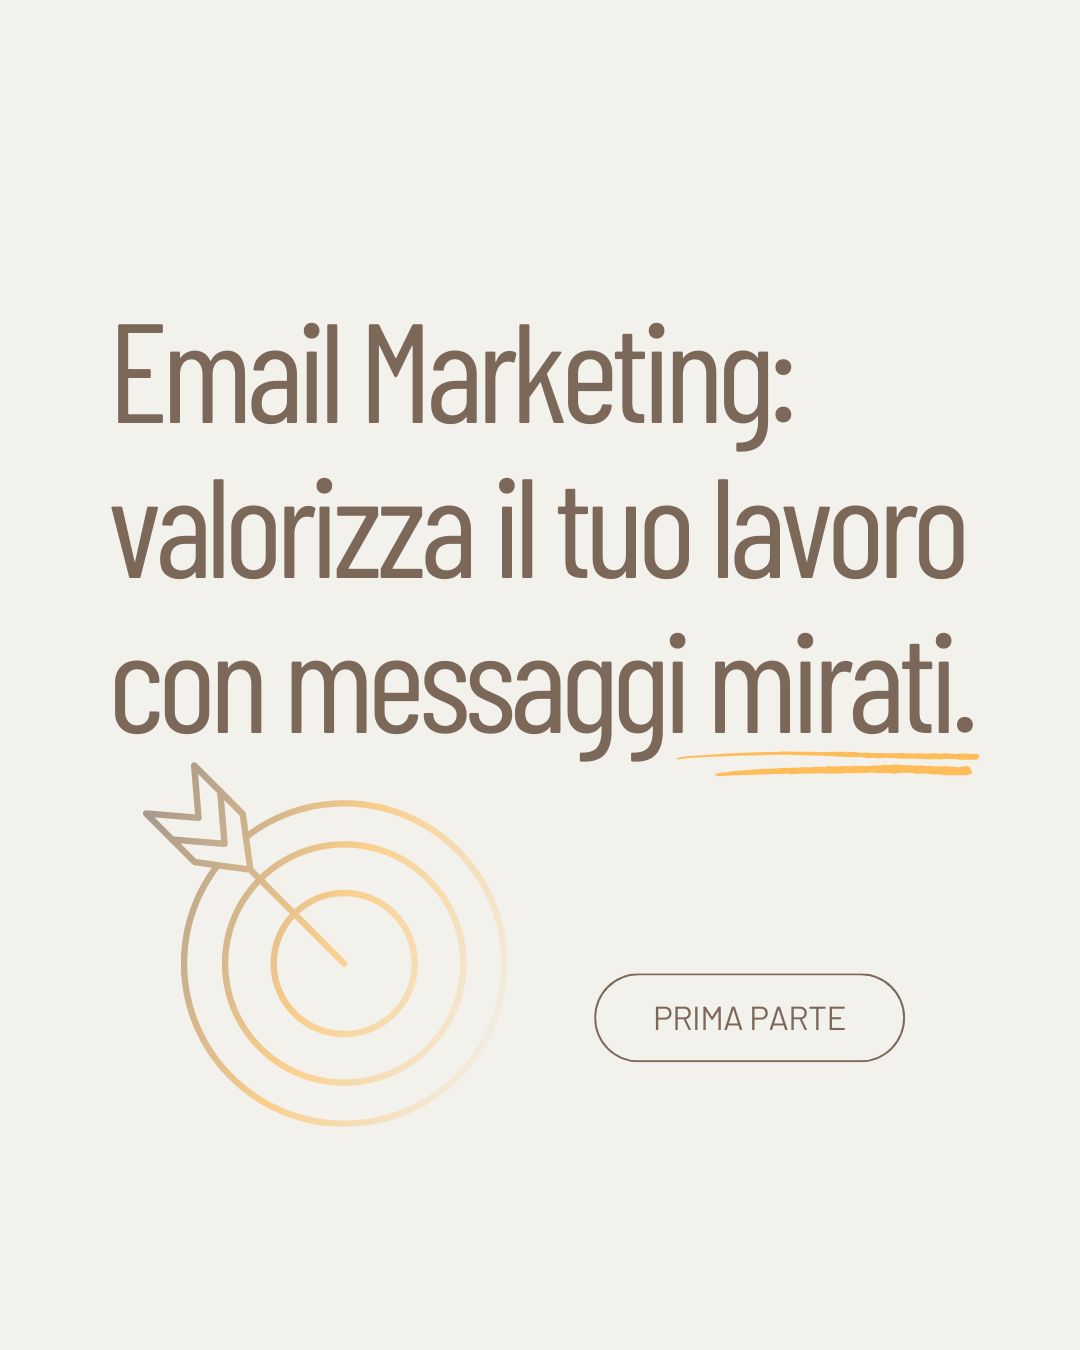 email marketing: valorizza il tuo lavoro con messaggi mirati